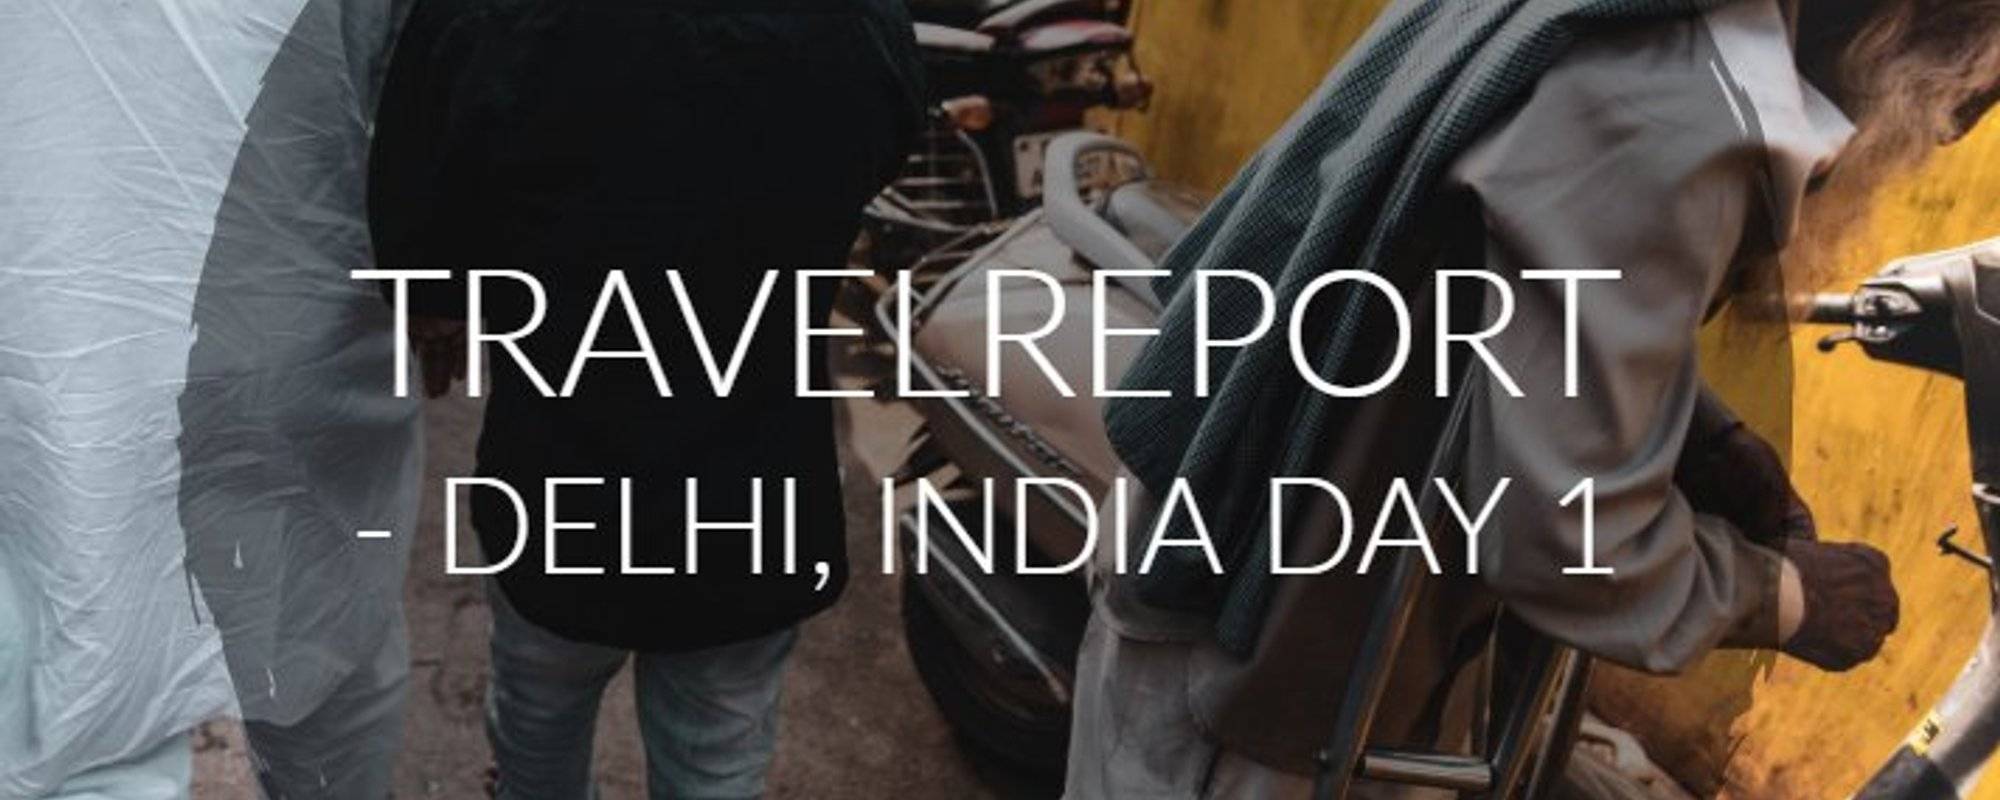 Travelreport - Delhi, India Day 1